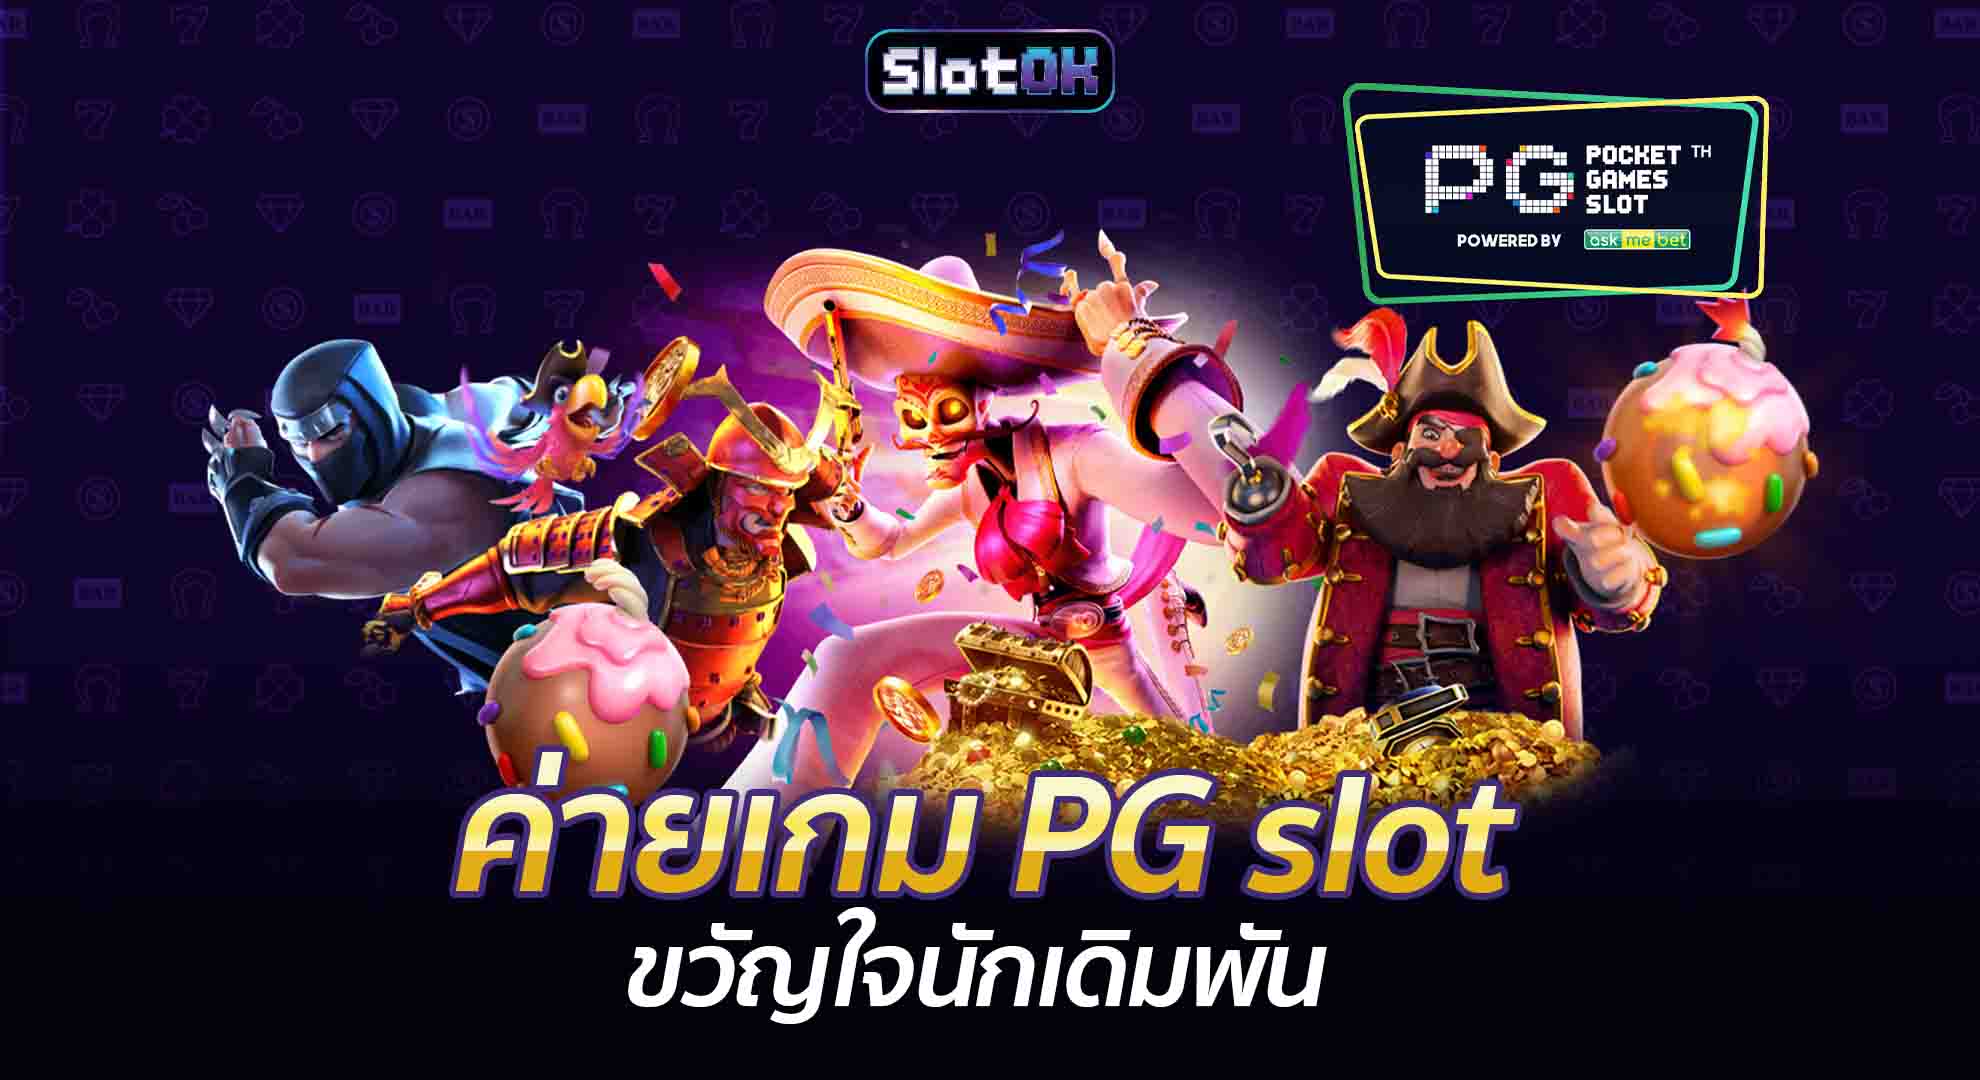 ค่ายเกม PG slot SlotOK สล็อตออนไลน์ โปรโมชั่นสล็อต สมัครสล็อต สล็อตโอเค ทางเข้าเล่นสล็อต สมัครสมาชิก ทางเข้าเล่น Slot โปรโมชั่น เกมสล็อต OK PG Slot